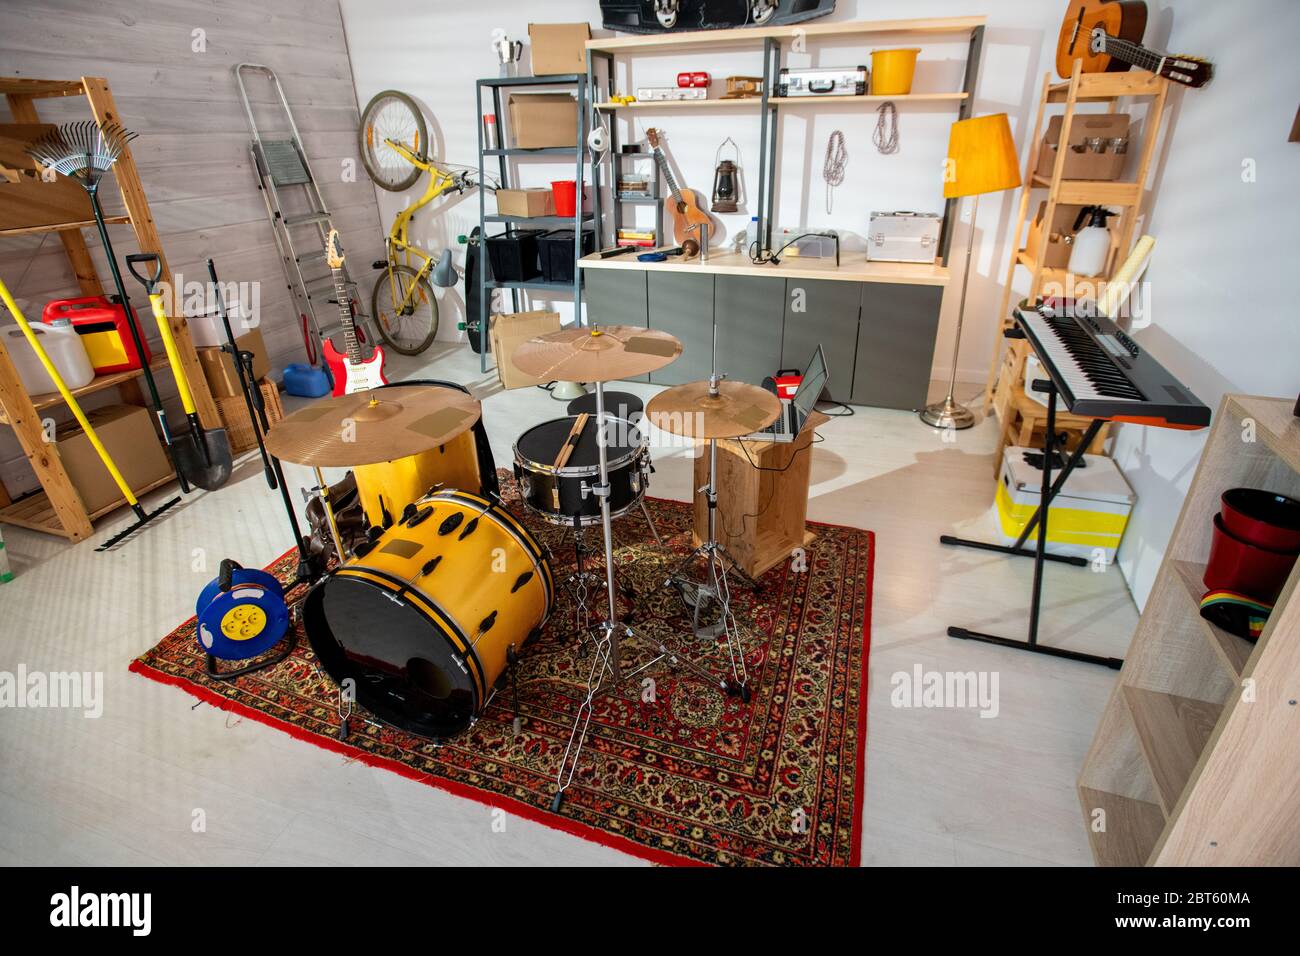 Interieur der zeitgenössischen Garage oder Studio von jungen Musiker mit Musikinstrumenten stehen auf Teppich, Werkzeuge und andere Dinge herum Stockfoto